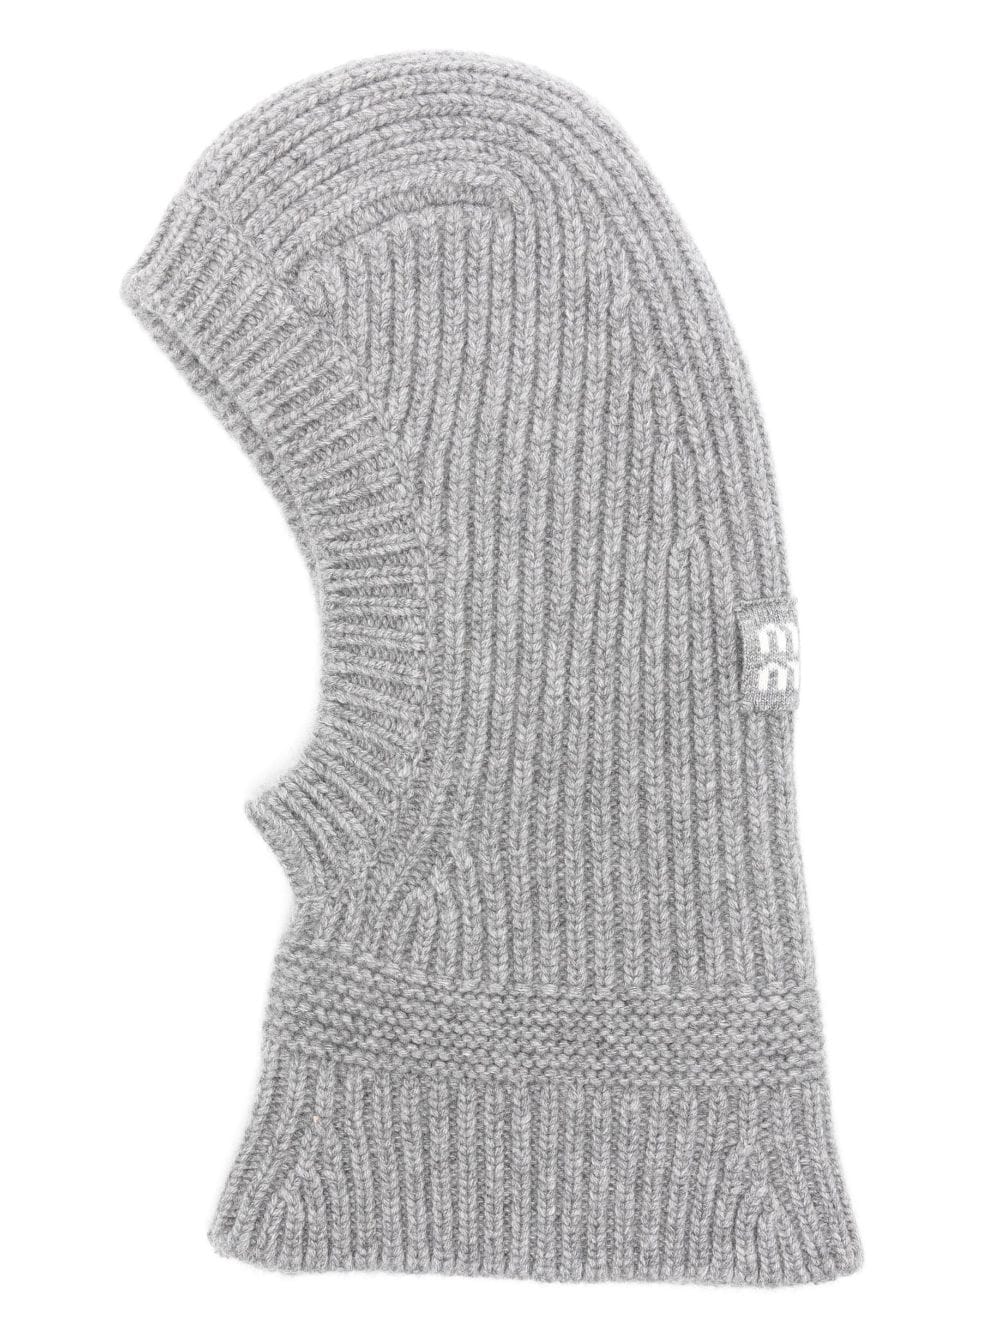 Miu Miu intarsia-knit logo chunky-knit balaclava - Grey von Miu Miu